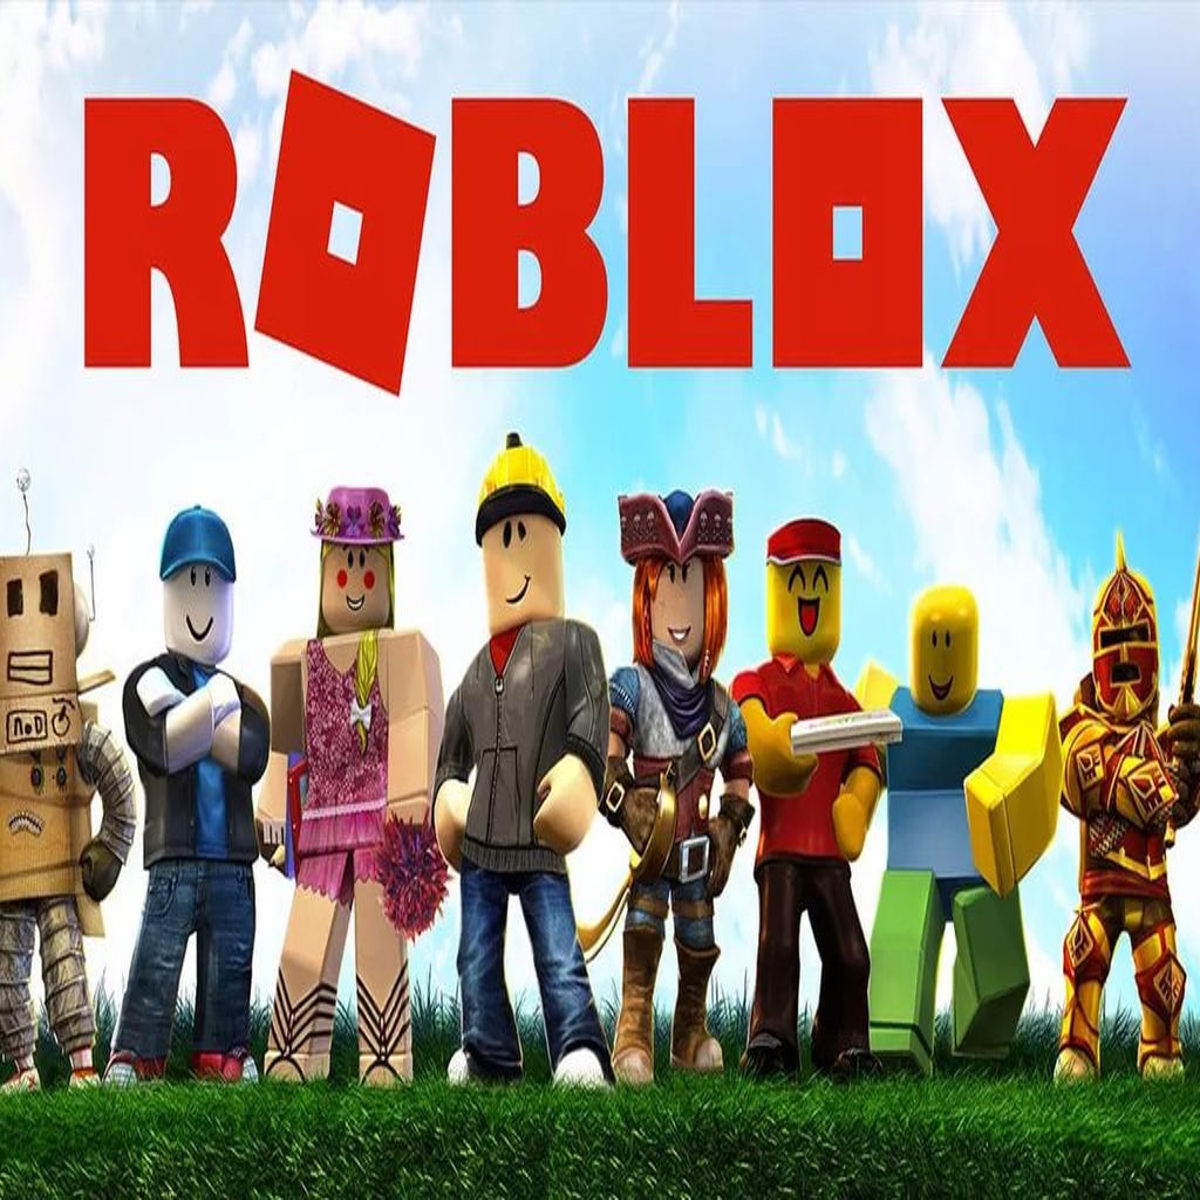 Roblox finalmente vai ser lançado no PS4 e no PS5; confira detalhes!